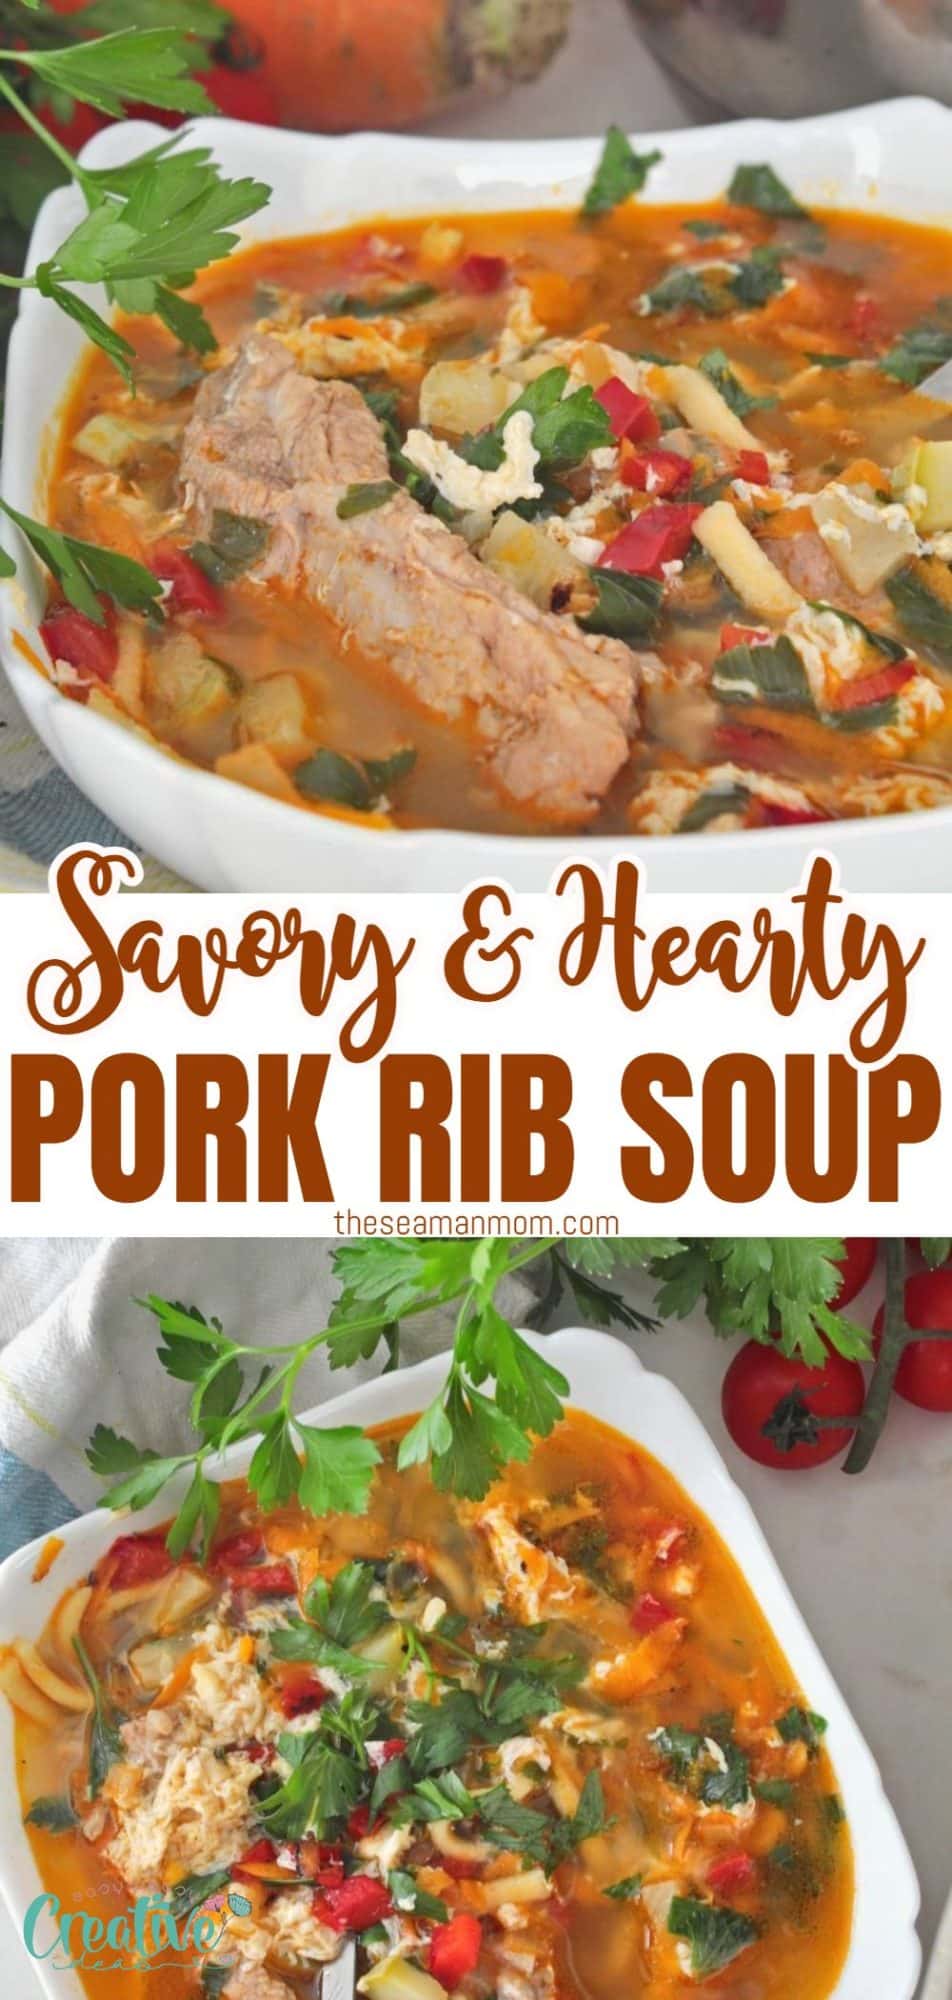 Hearty pork rib soup